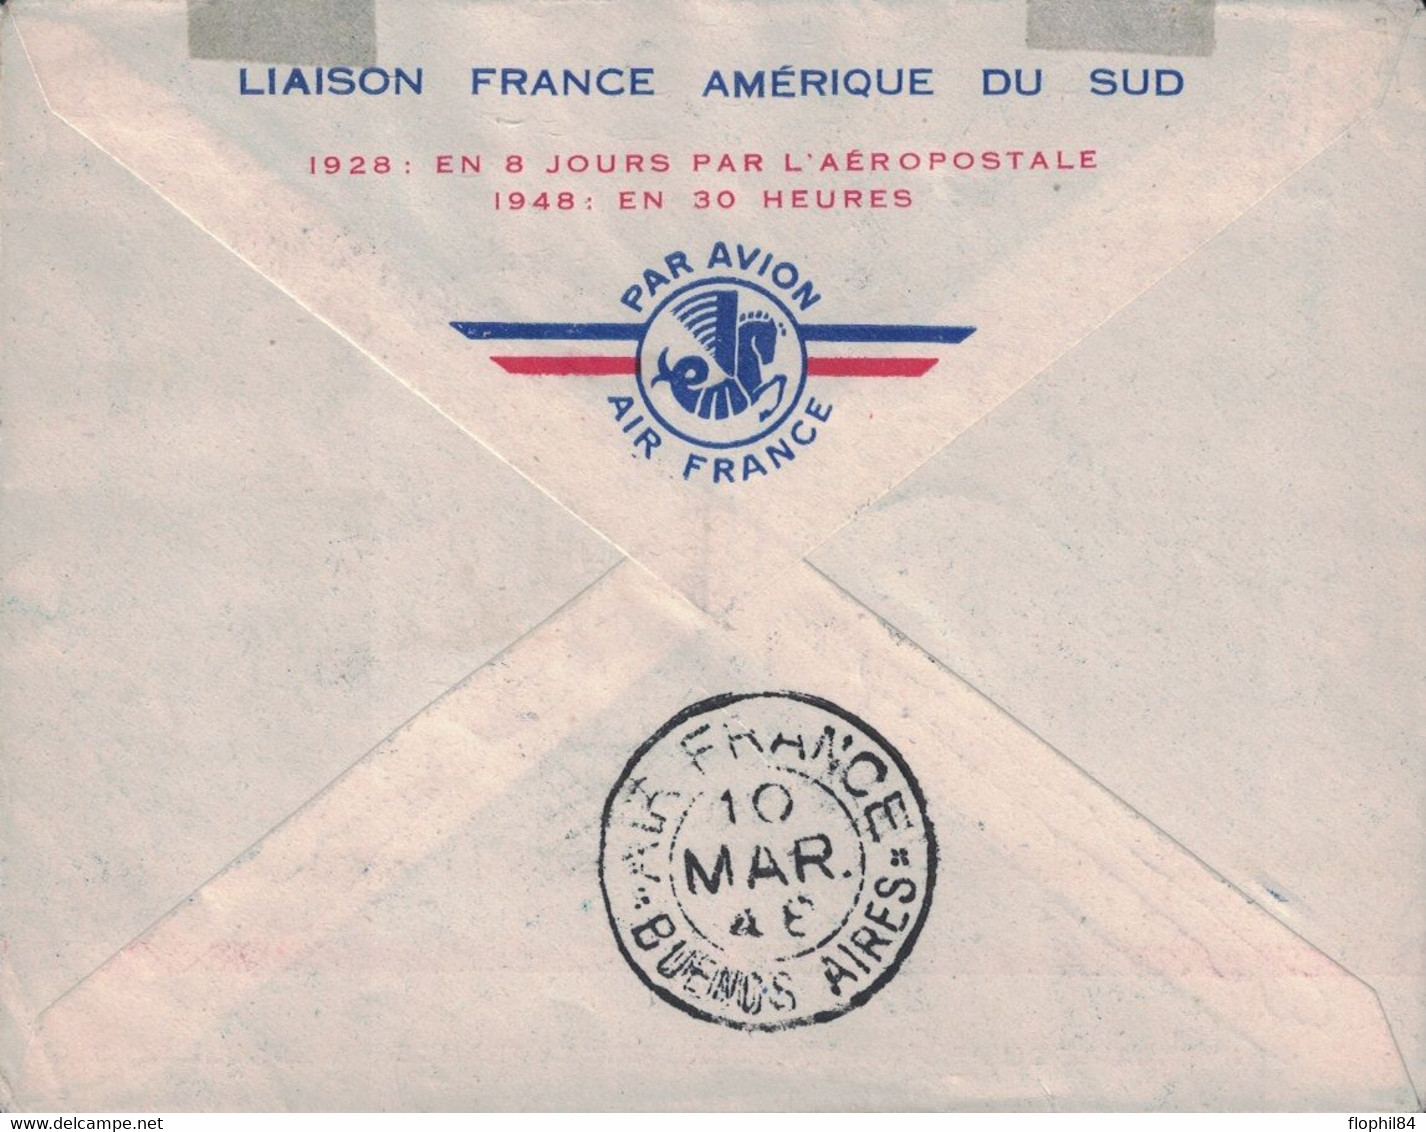 TUNISIE - TUNIS - ENVELOPPE AIR FRANCE - LIAISON FRANCE AMERIQUE DU SUD - 1929 EN 8 JOURS - 1948 EN 30 HEURES - CACHET S - Airmail